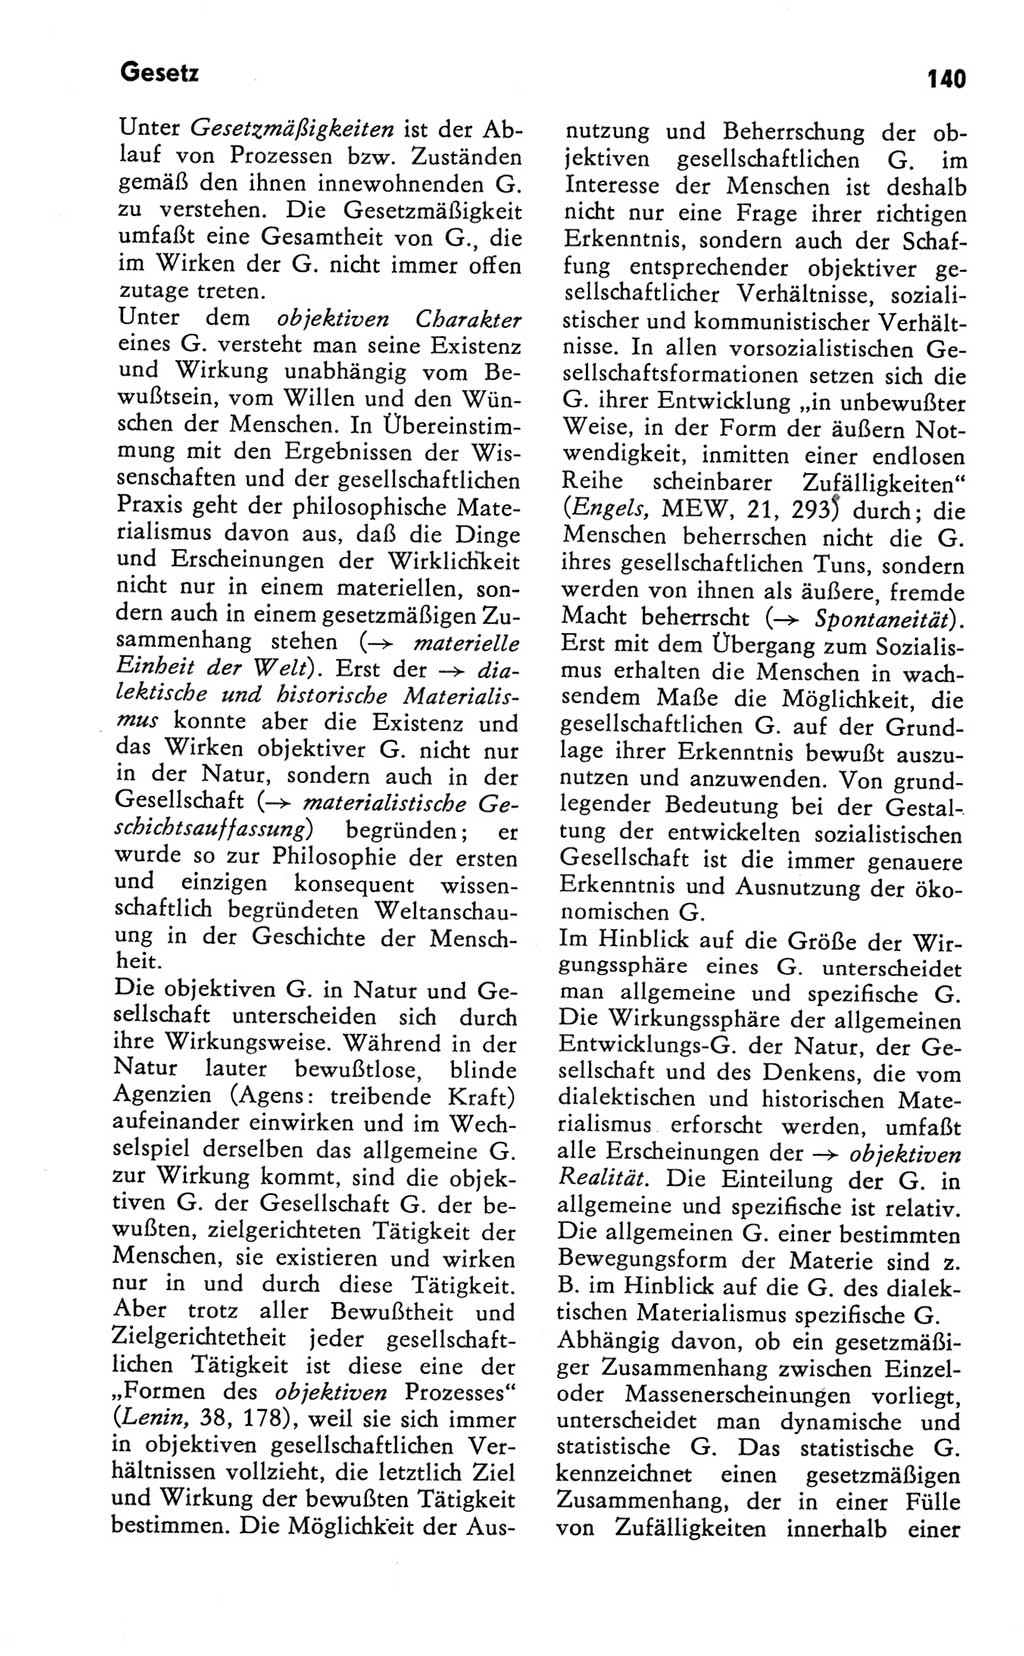 Kleines Wörterbuch der marxistisch-leninistischen Philosophie [Deutsche Demokratische Republik (DDR)] 1981, Seite 140 (Kl. Wb. ML Phil. DDR 1981, S. 140)